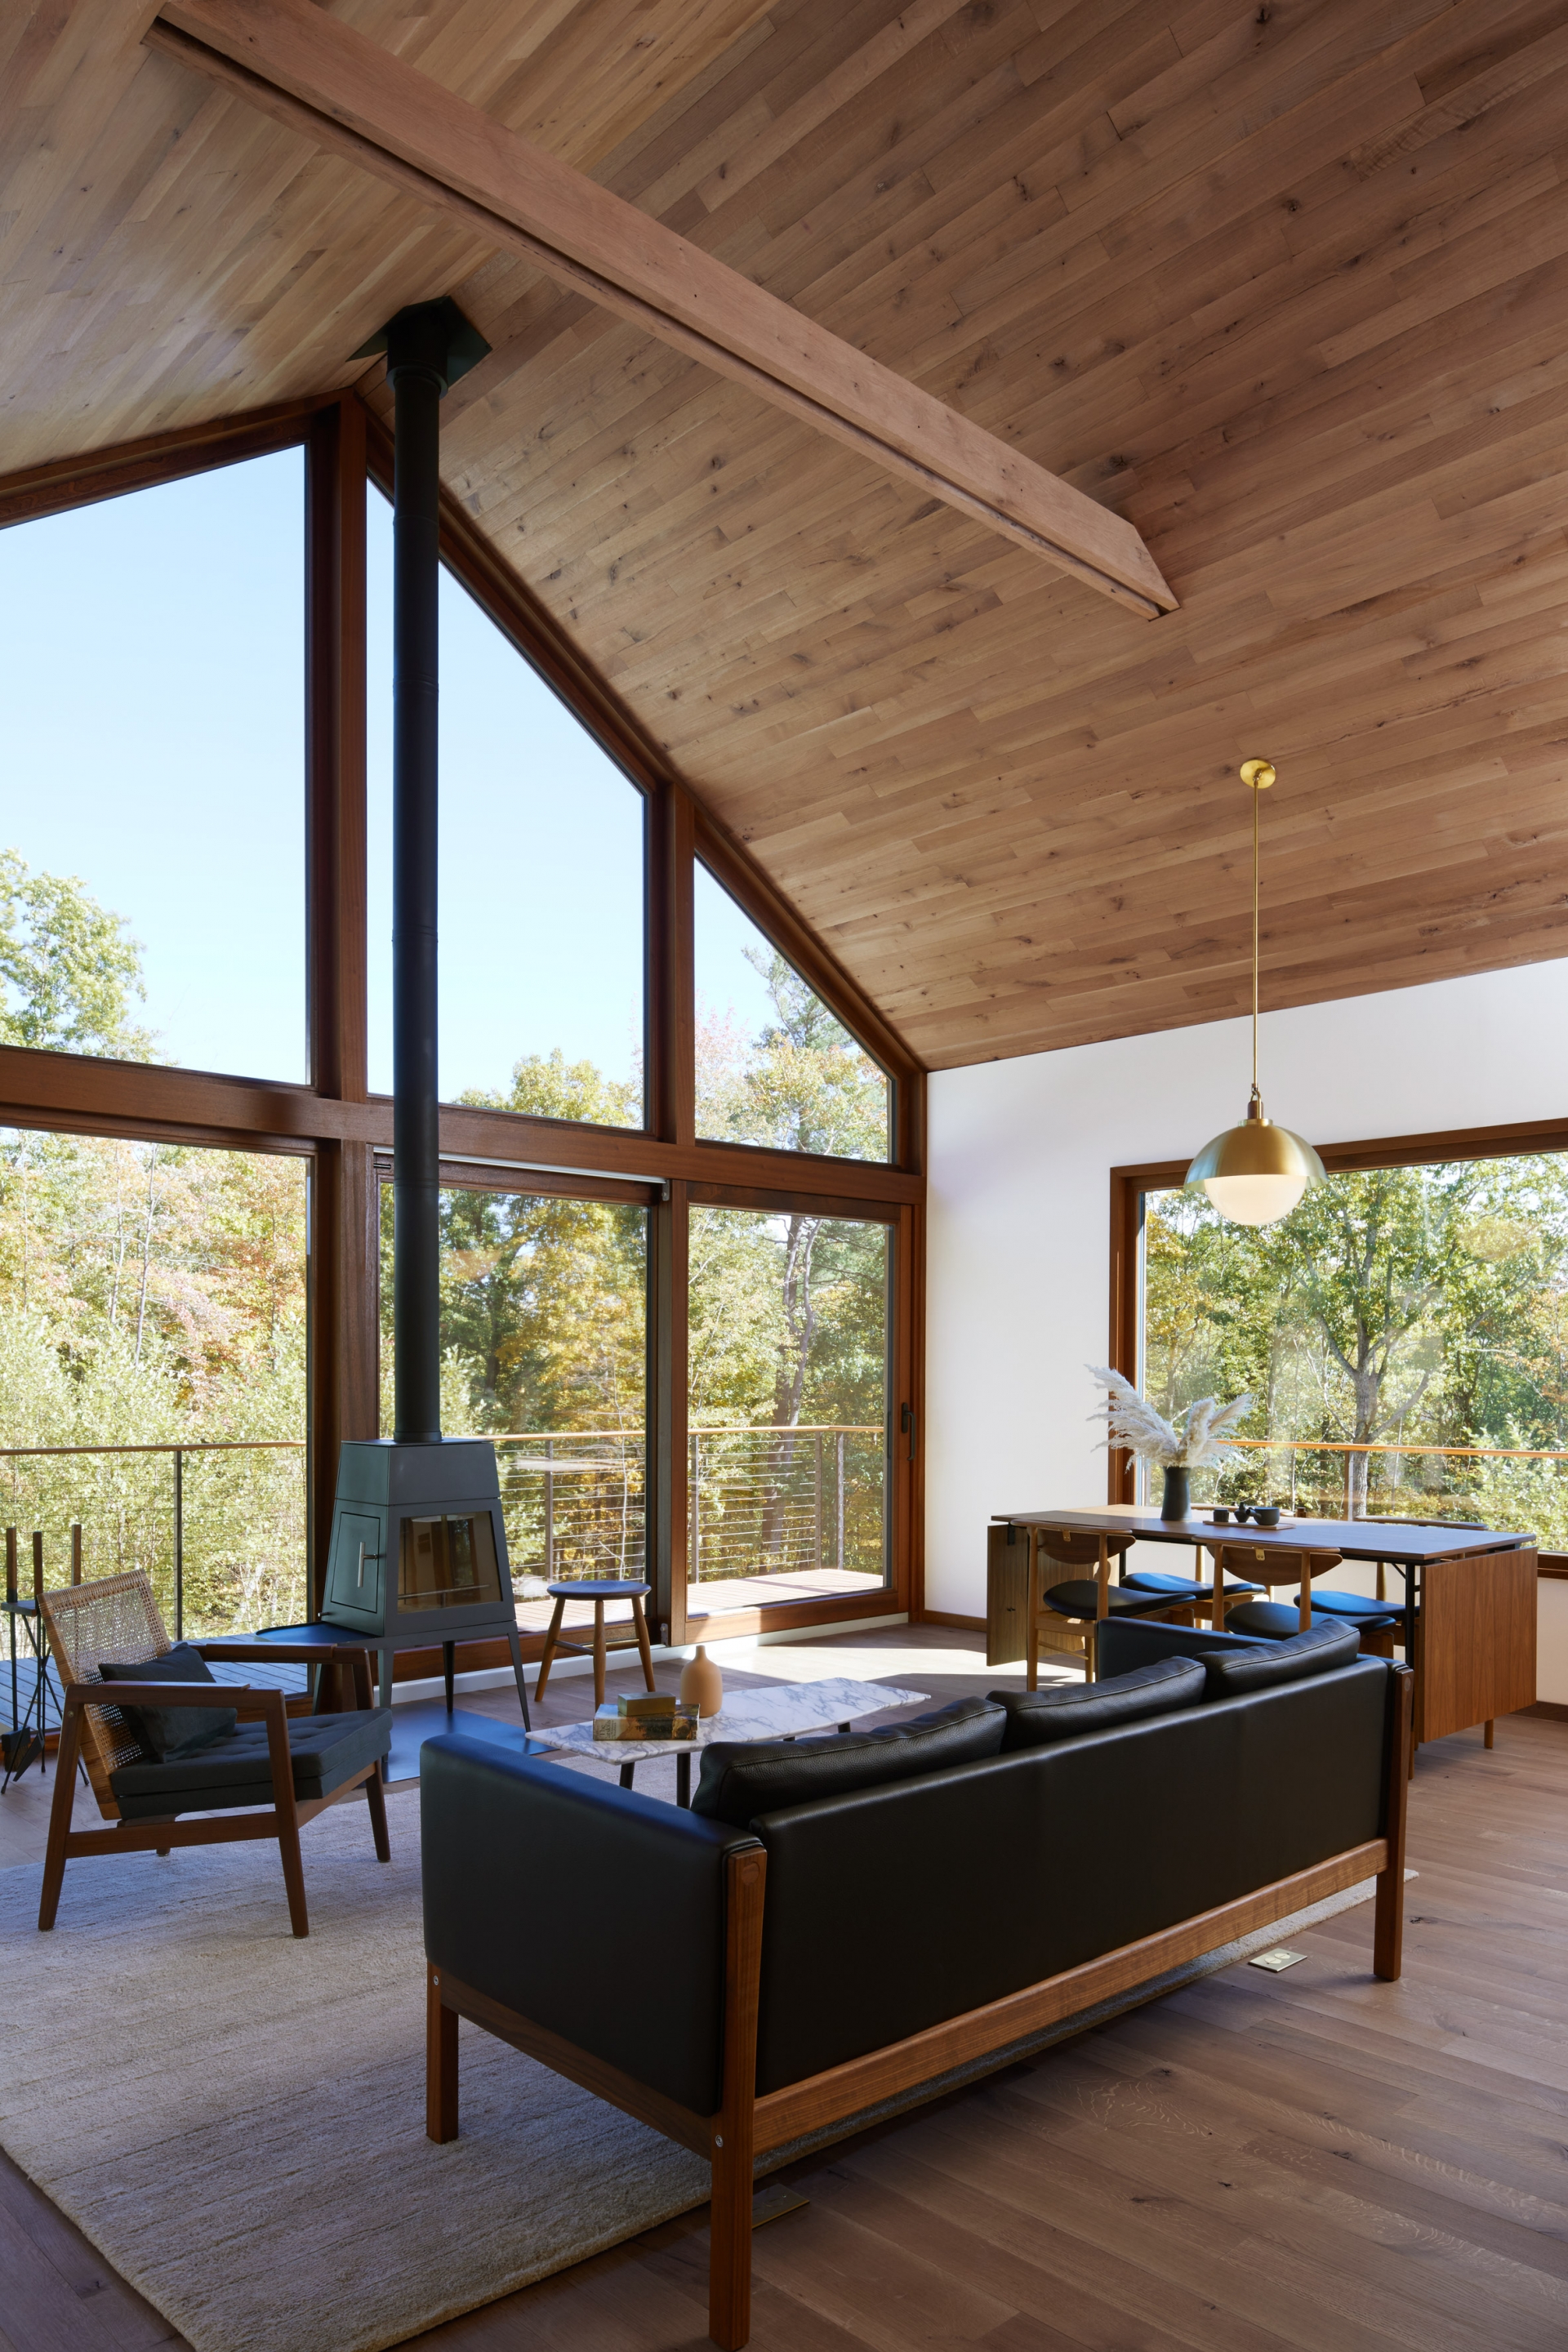 Công trình xây dựng bằng gỗ kết hợp cửa kính trong suốt tạo nên nét quyến rũ tự nhiên. Phòng khách, bếp và phòng ăn được thiết kế mở tạo cảm giác rộng rãi và đón nhận ánh sáng tự nhiên dồi dào.